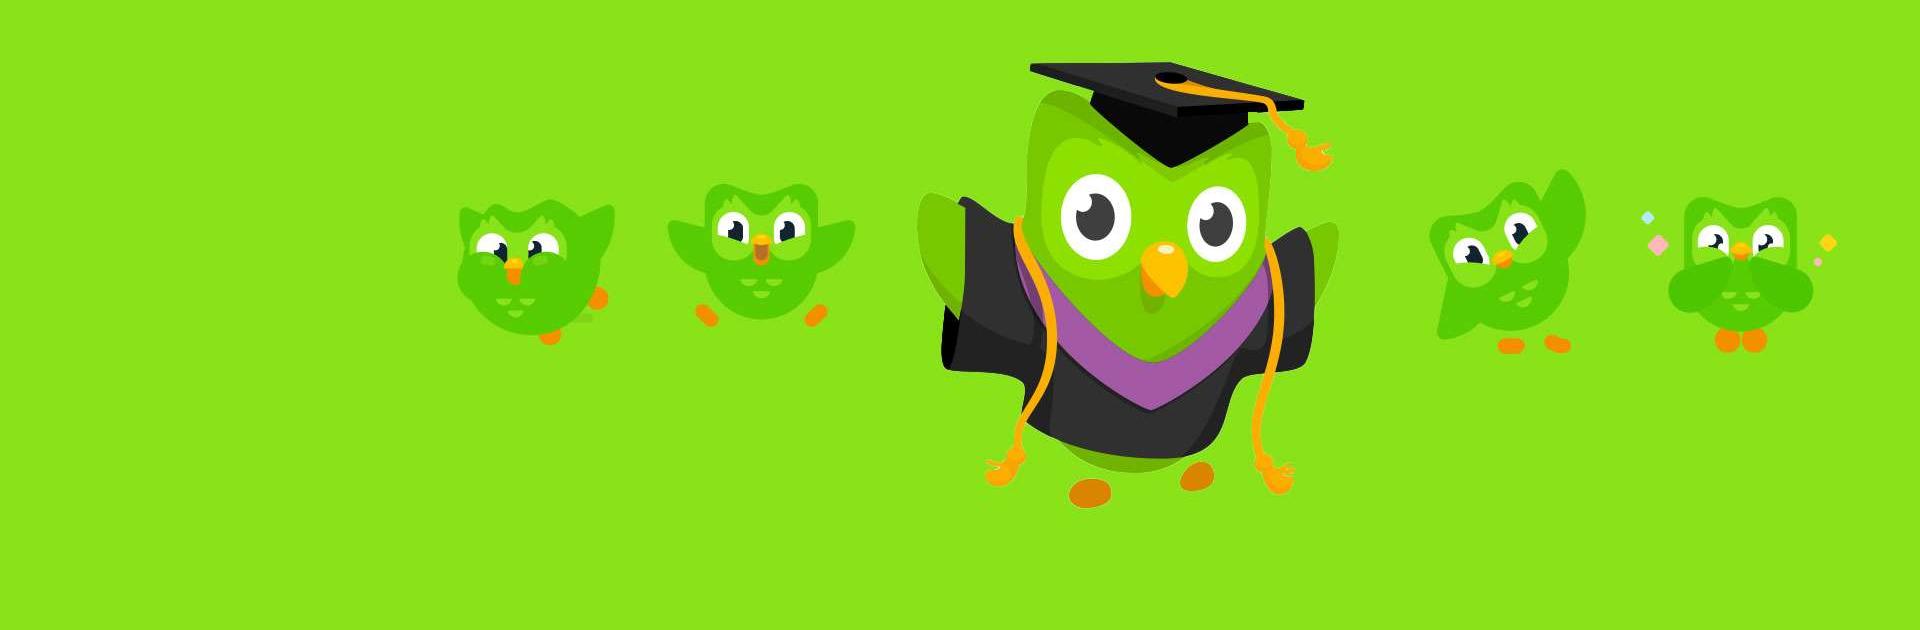 多鄰國(Duolingo) | 高效學習英語